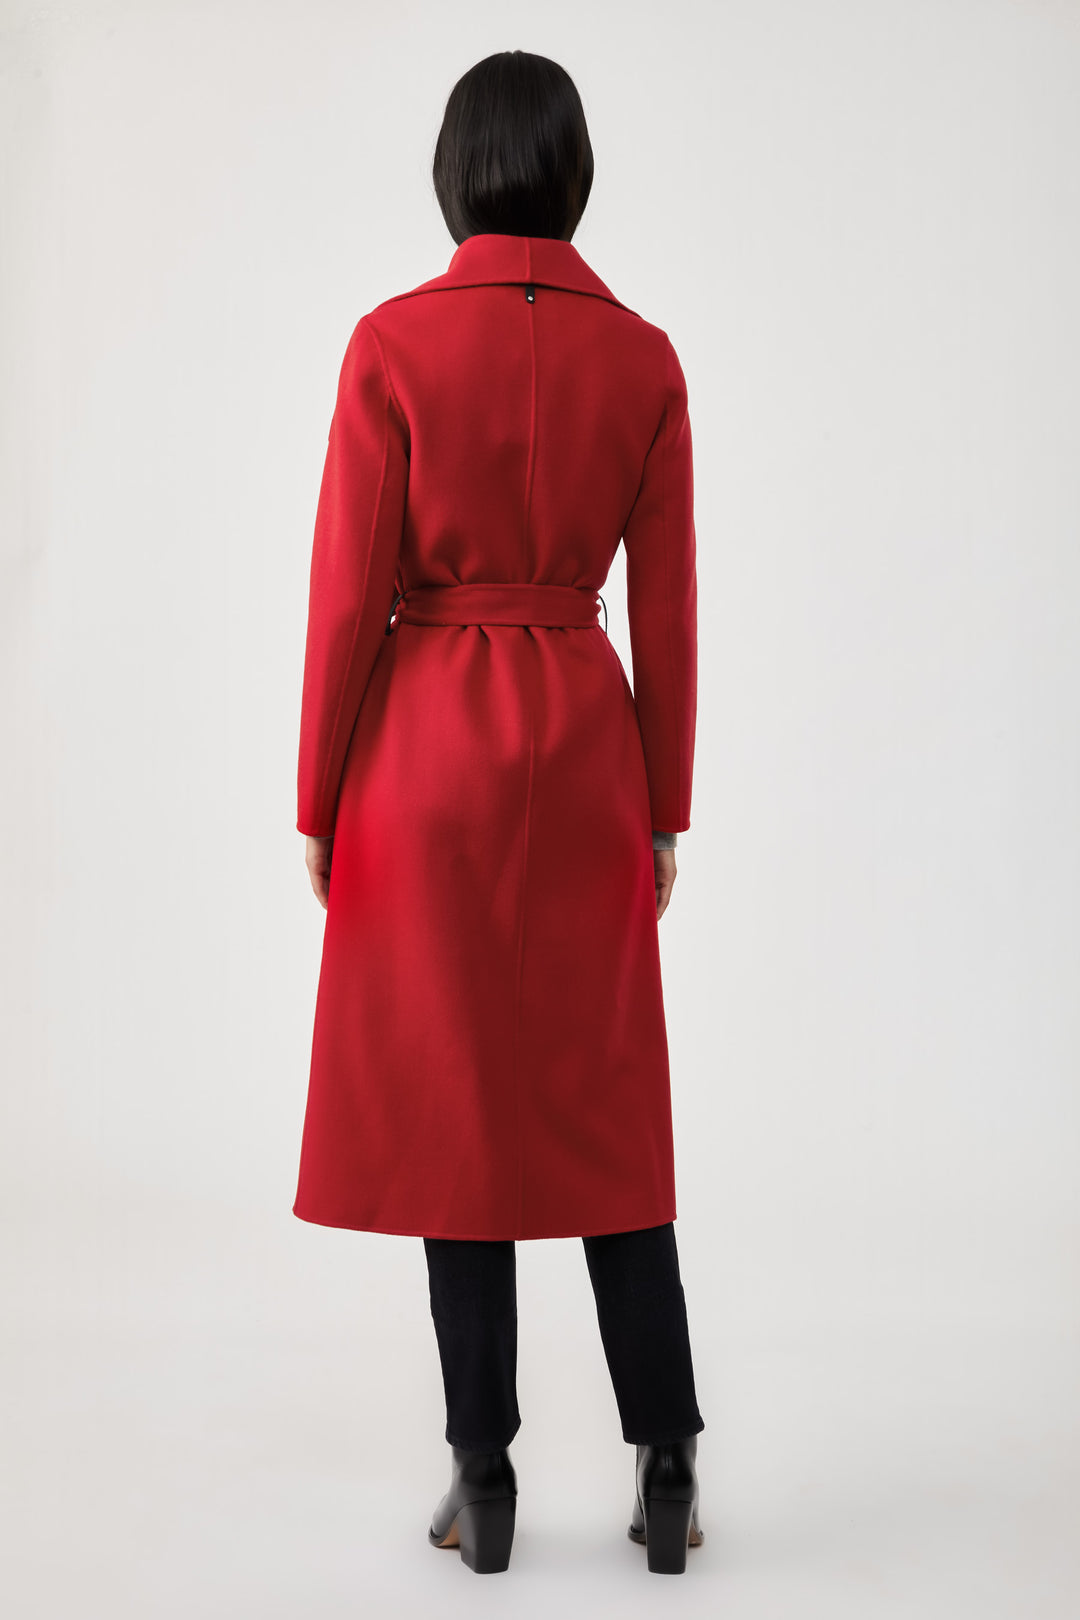 MACKAGE - Mai Wool Coat in Red